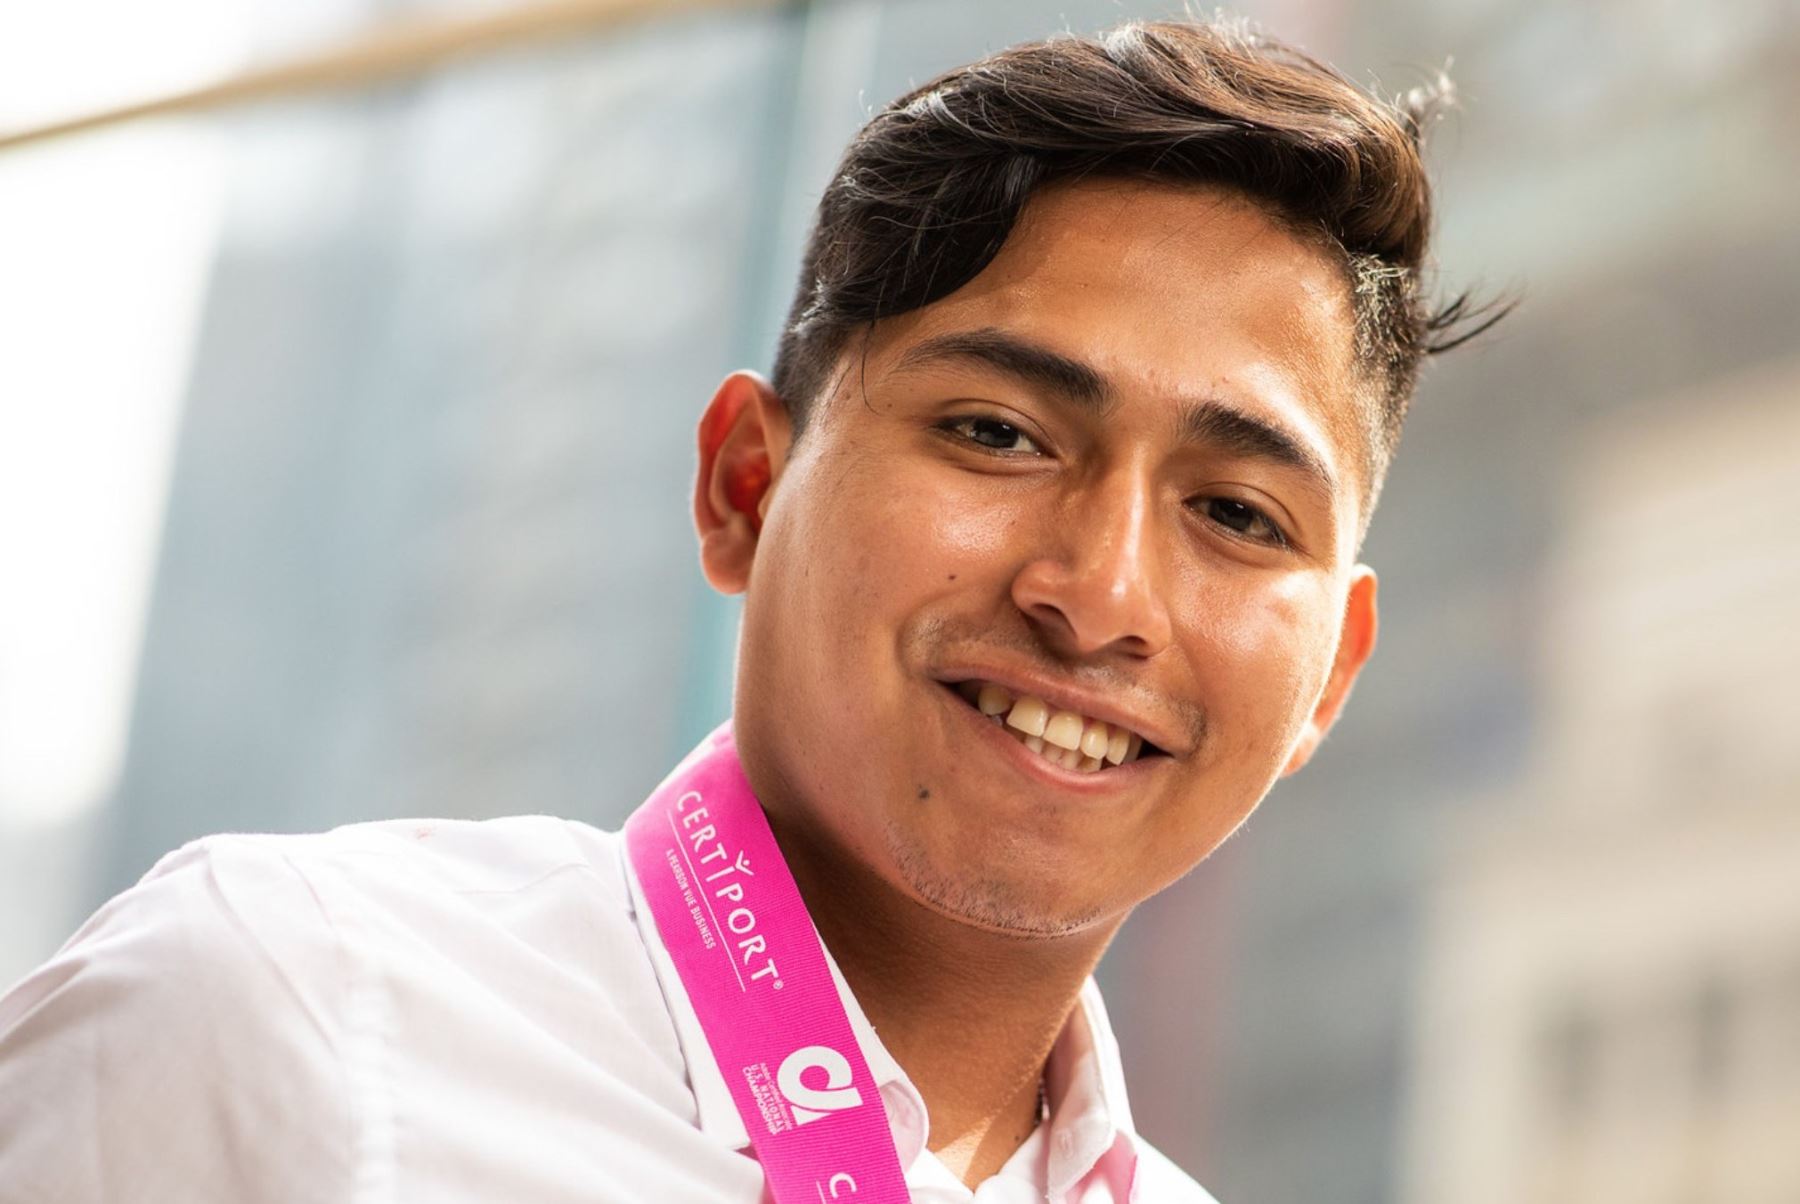 Frank Romero es el estudiante peruano que ganÃ³ la medalla de plata en campeonato mundial de diseÃ±o grÃ¡fico. Foto: ANDINA/DifusiÃ³n.